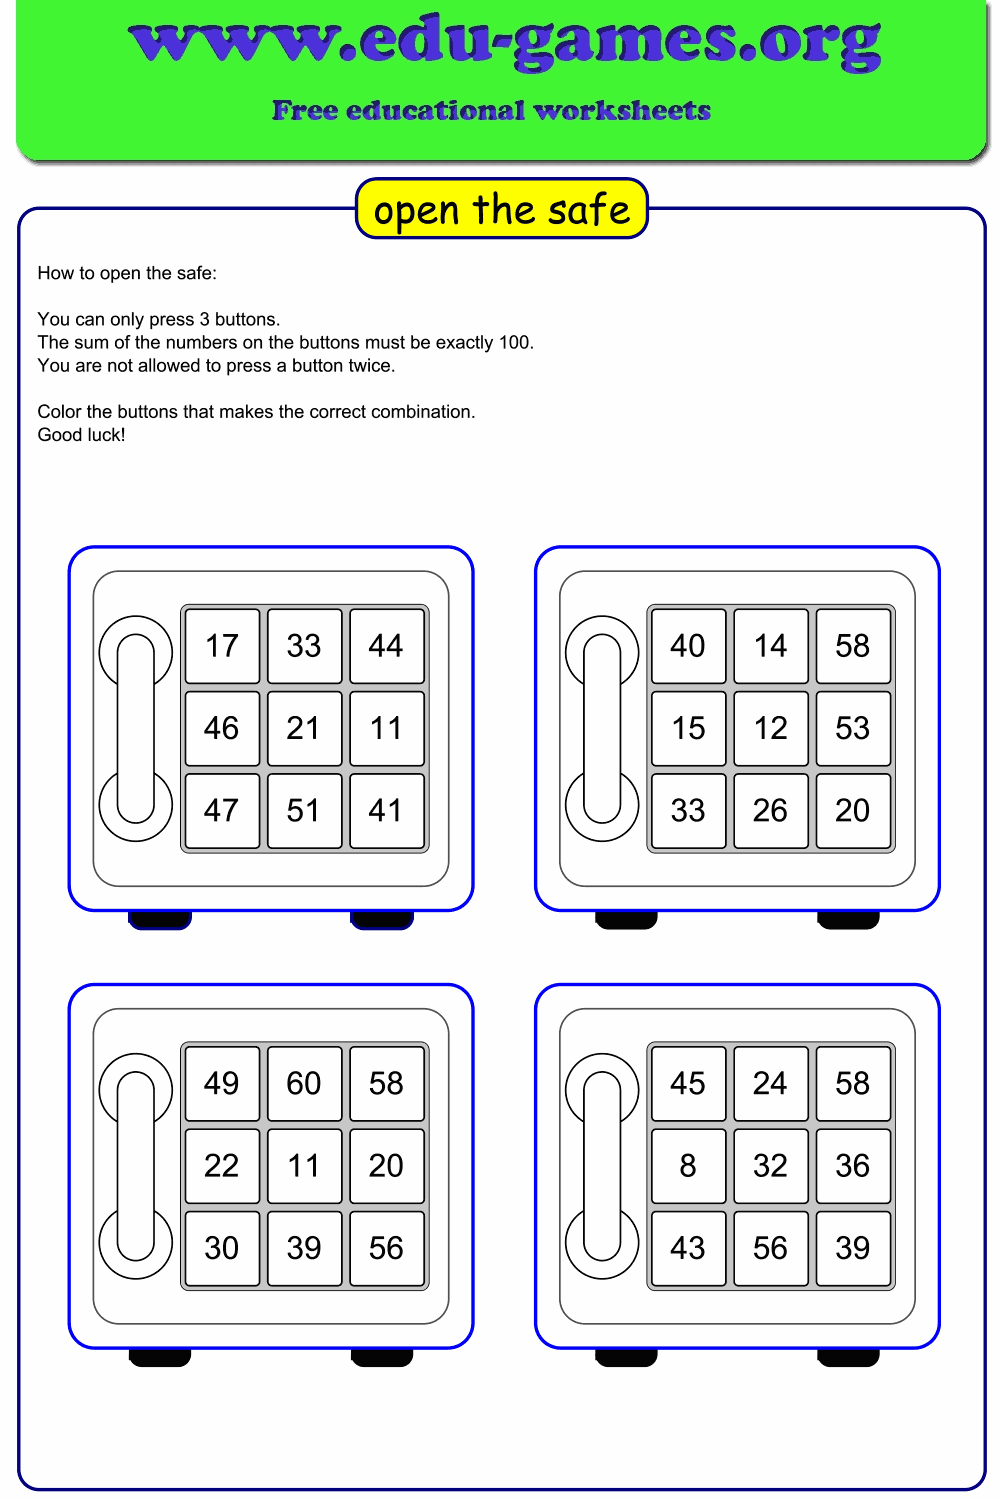 Open safe puzzle worksheet maker | edu-games.org